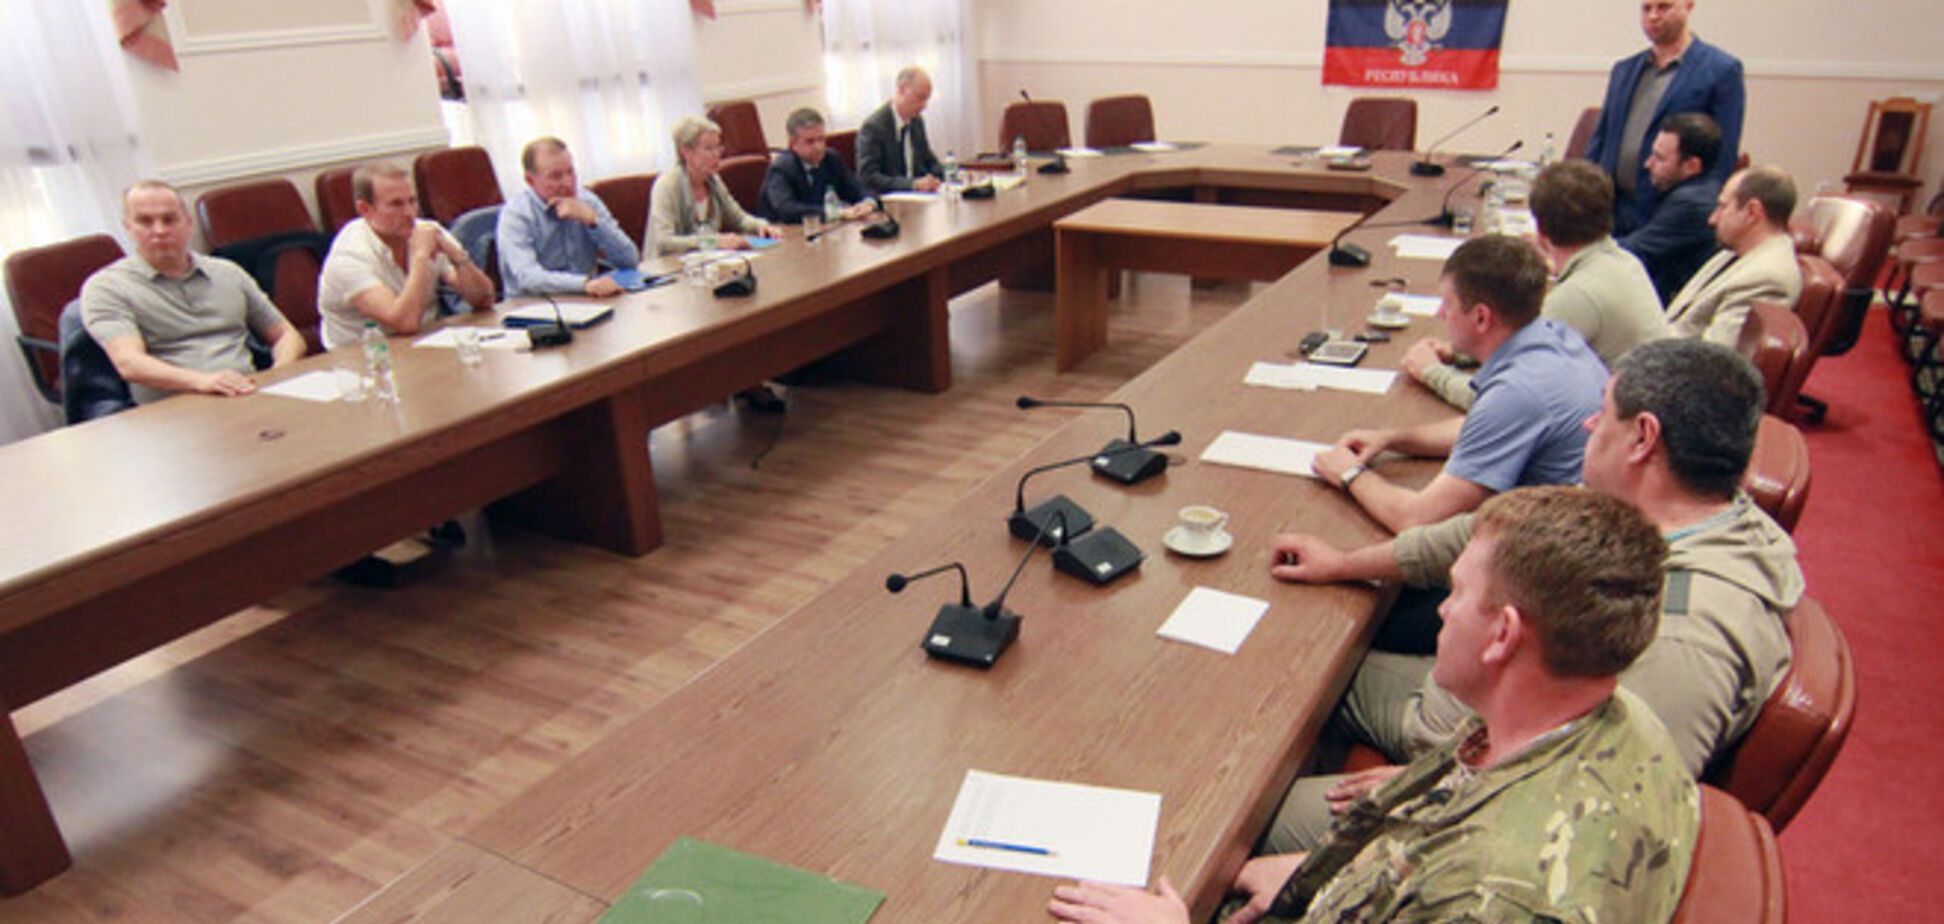 ЗМІ повідомили про початок другого раунду переговорів у Донецьку